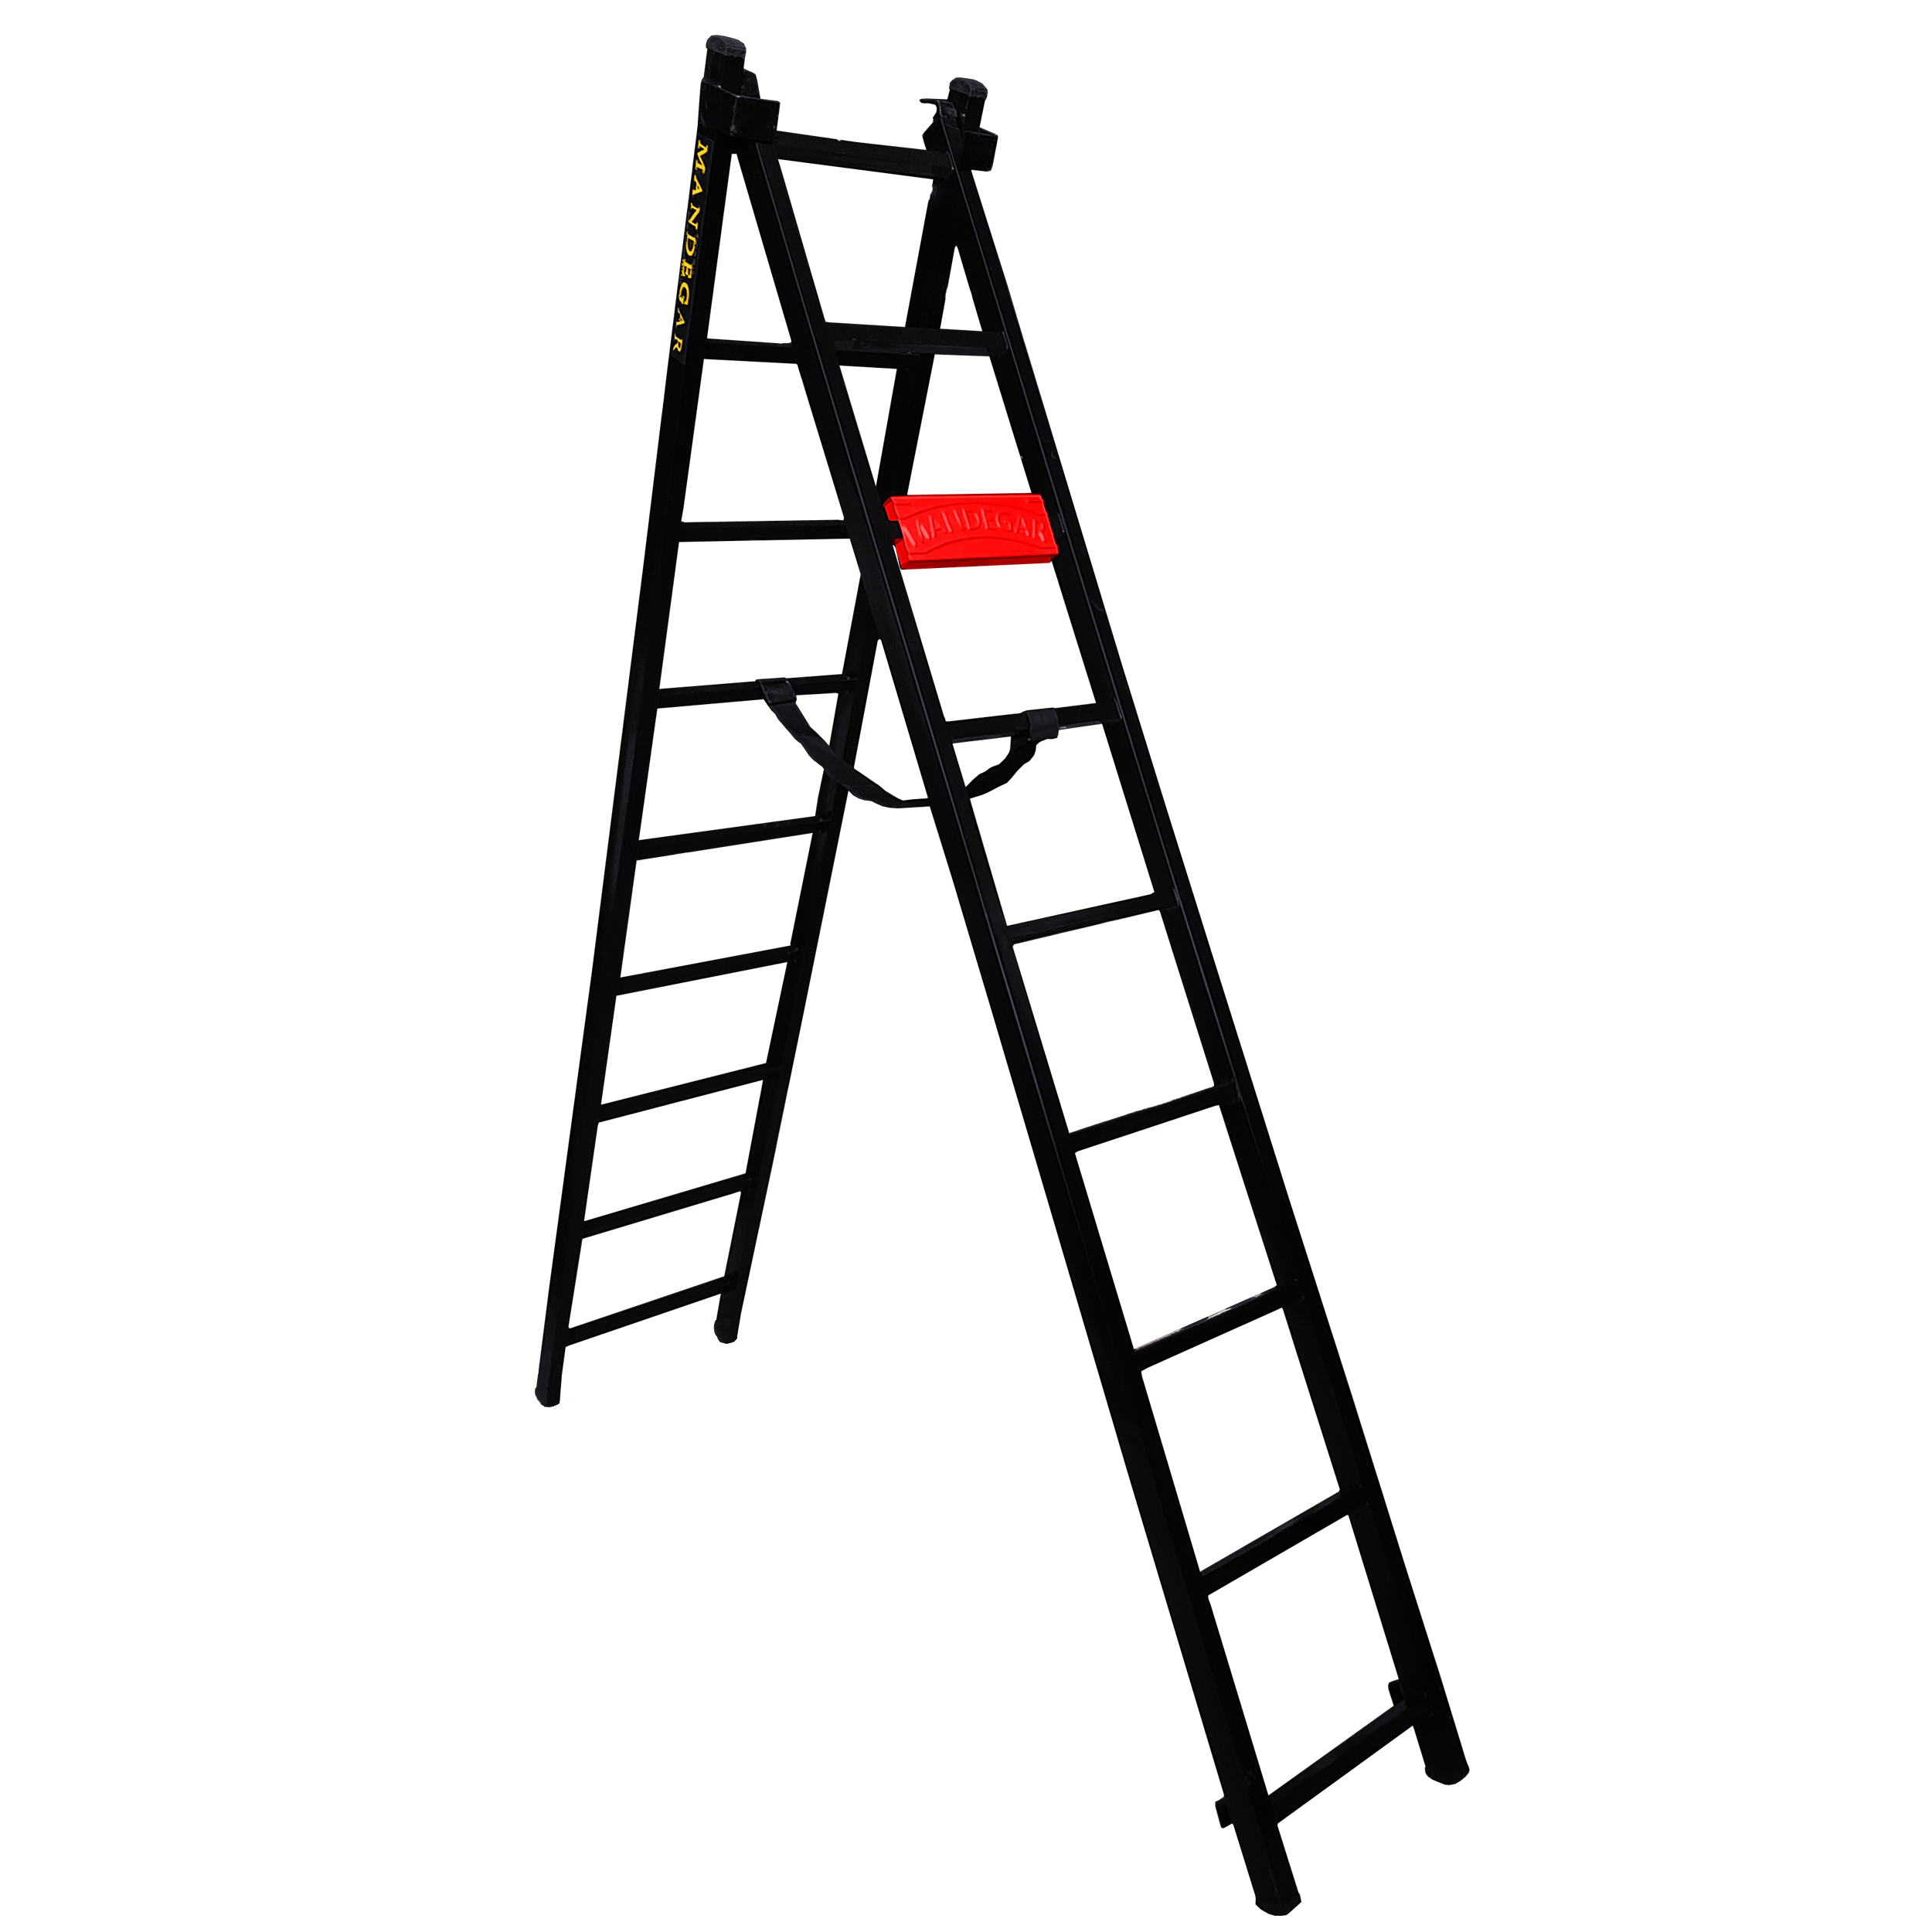 نردبان 18 پله ماندگار مدل پارس